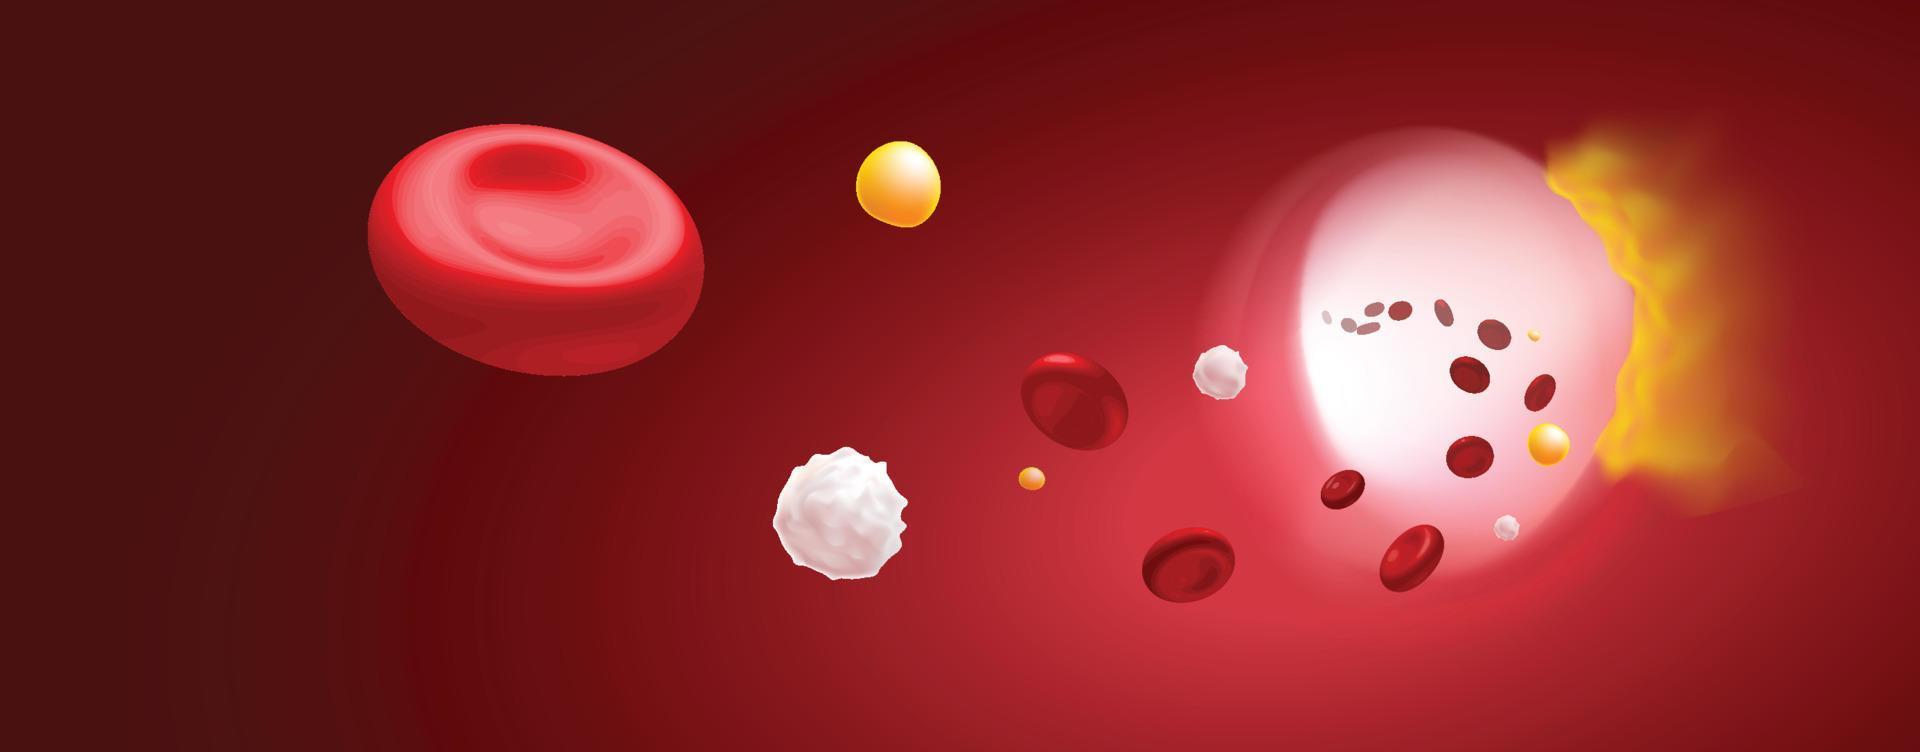 Ilustración 3D de glóbulos rojos, glóbulos blancos y colesterol que obstruyen la causa de la muerte. uso médico ciencia, educación vector